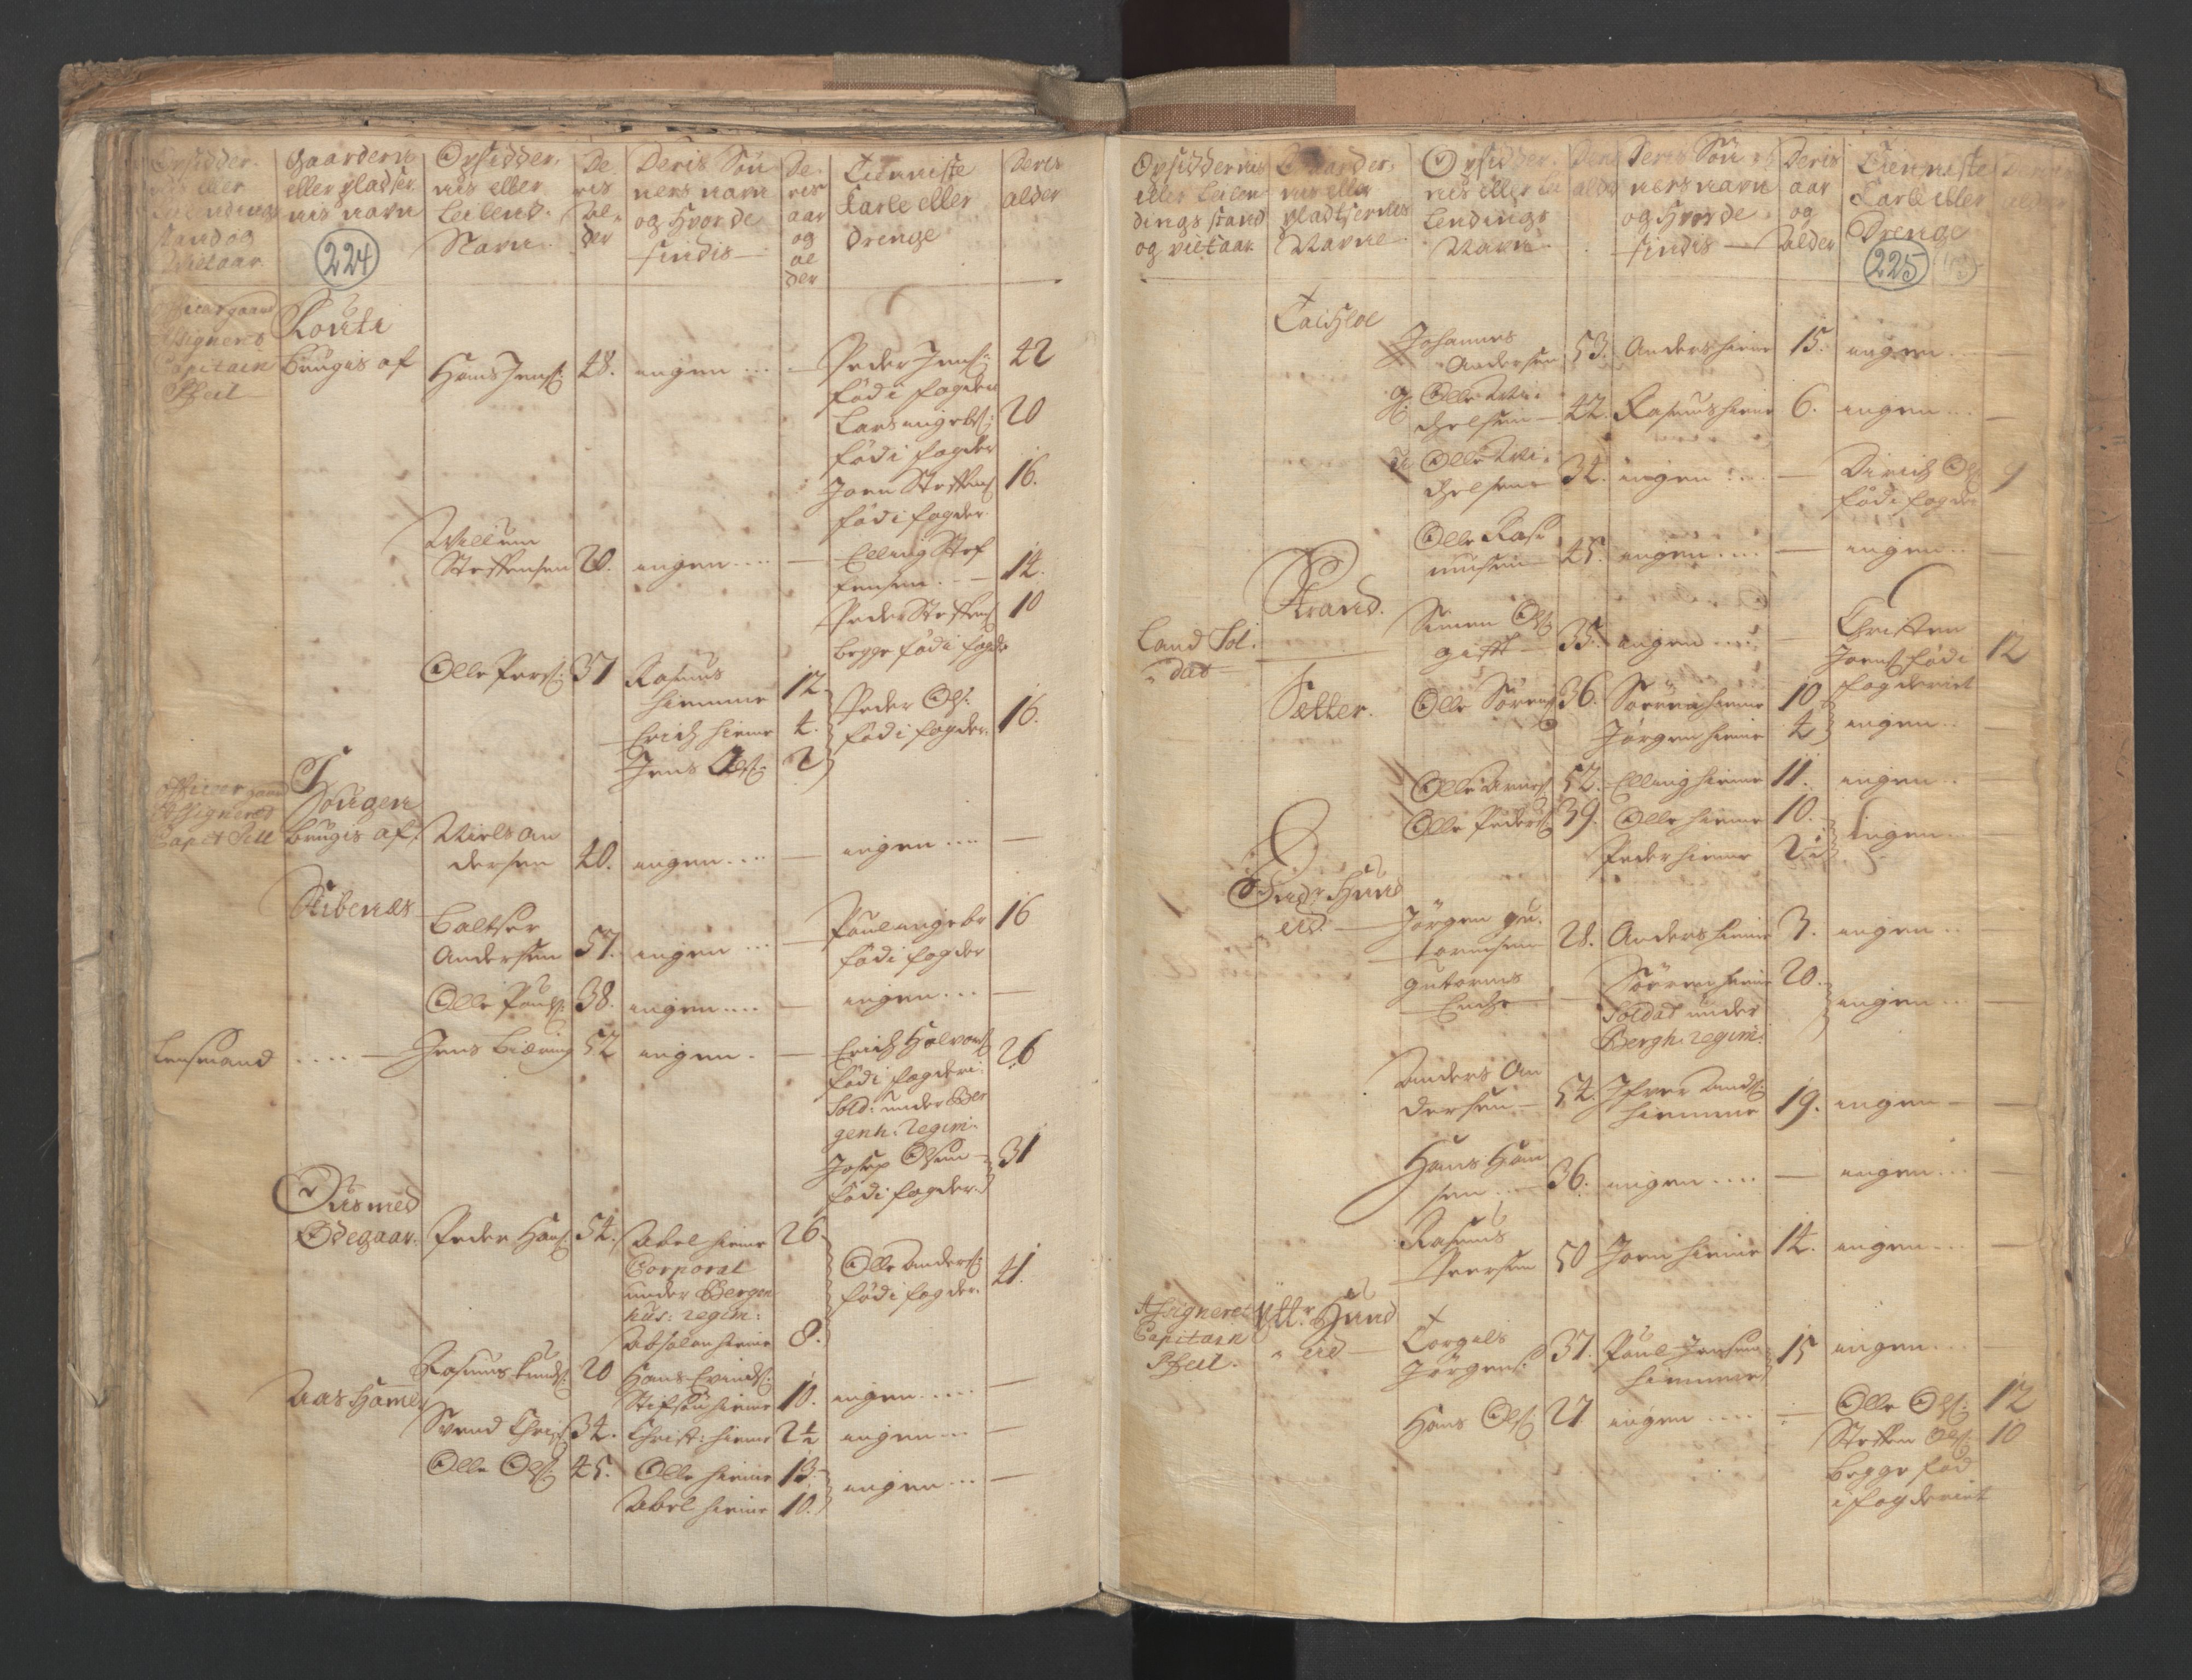 RA, Manntallet 1701, nr. 9: Sunnfjord fogderi, Nordfjord fogderi og Svanø birk, 1701, s. 224-225